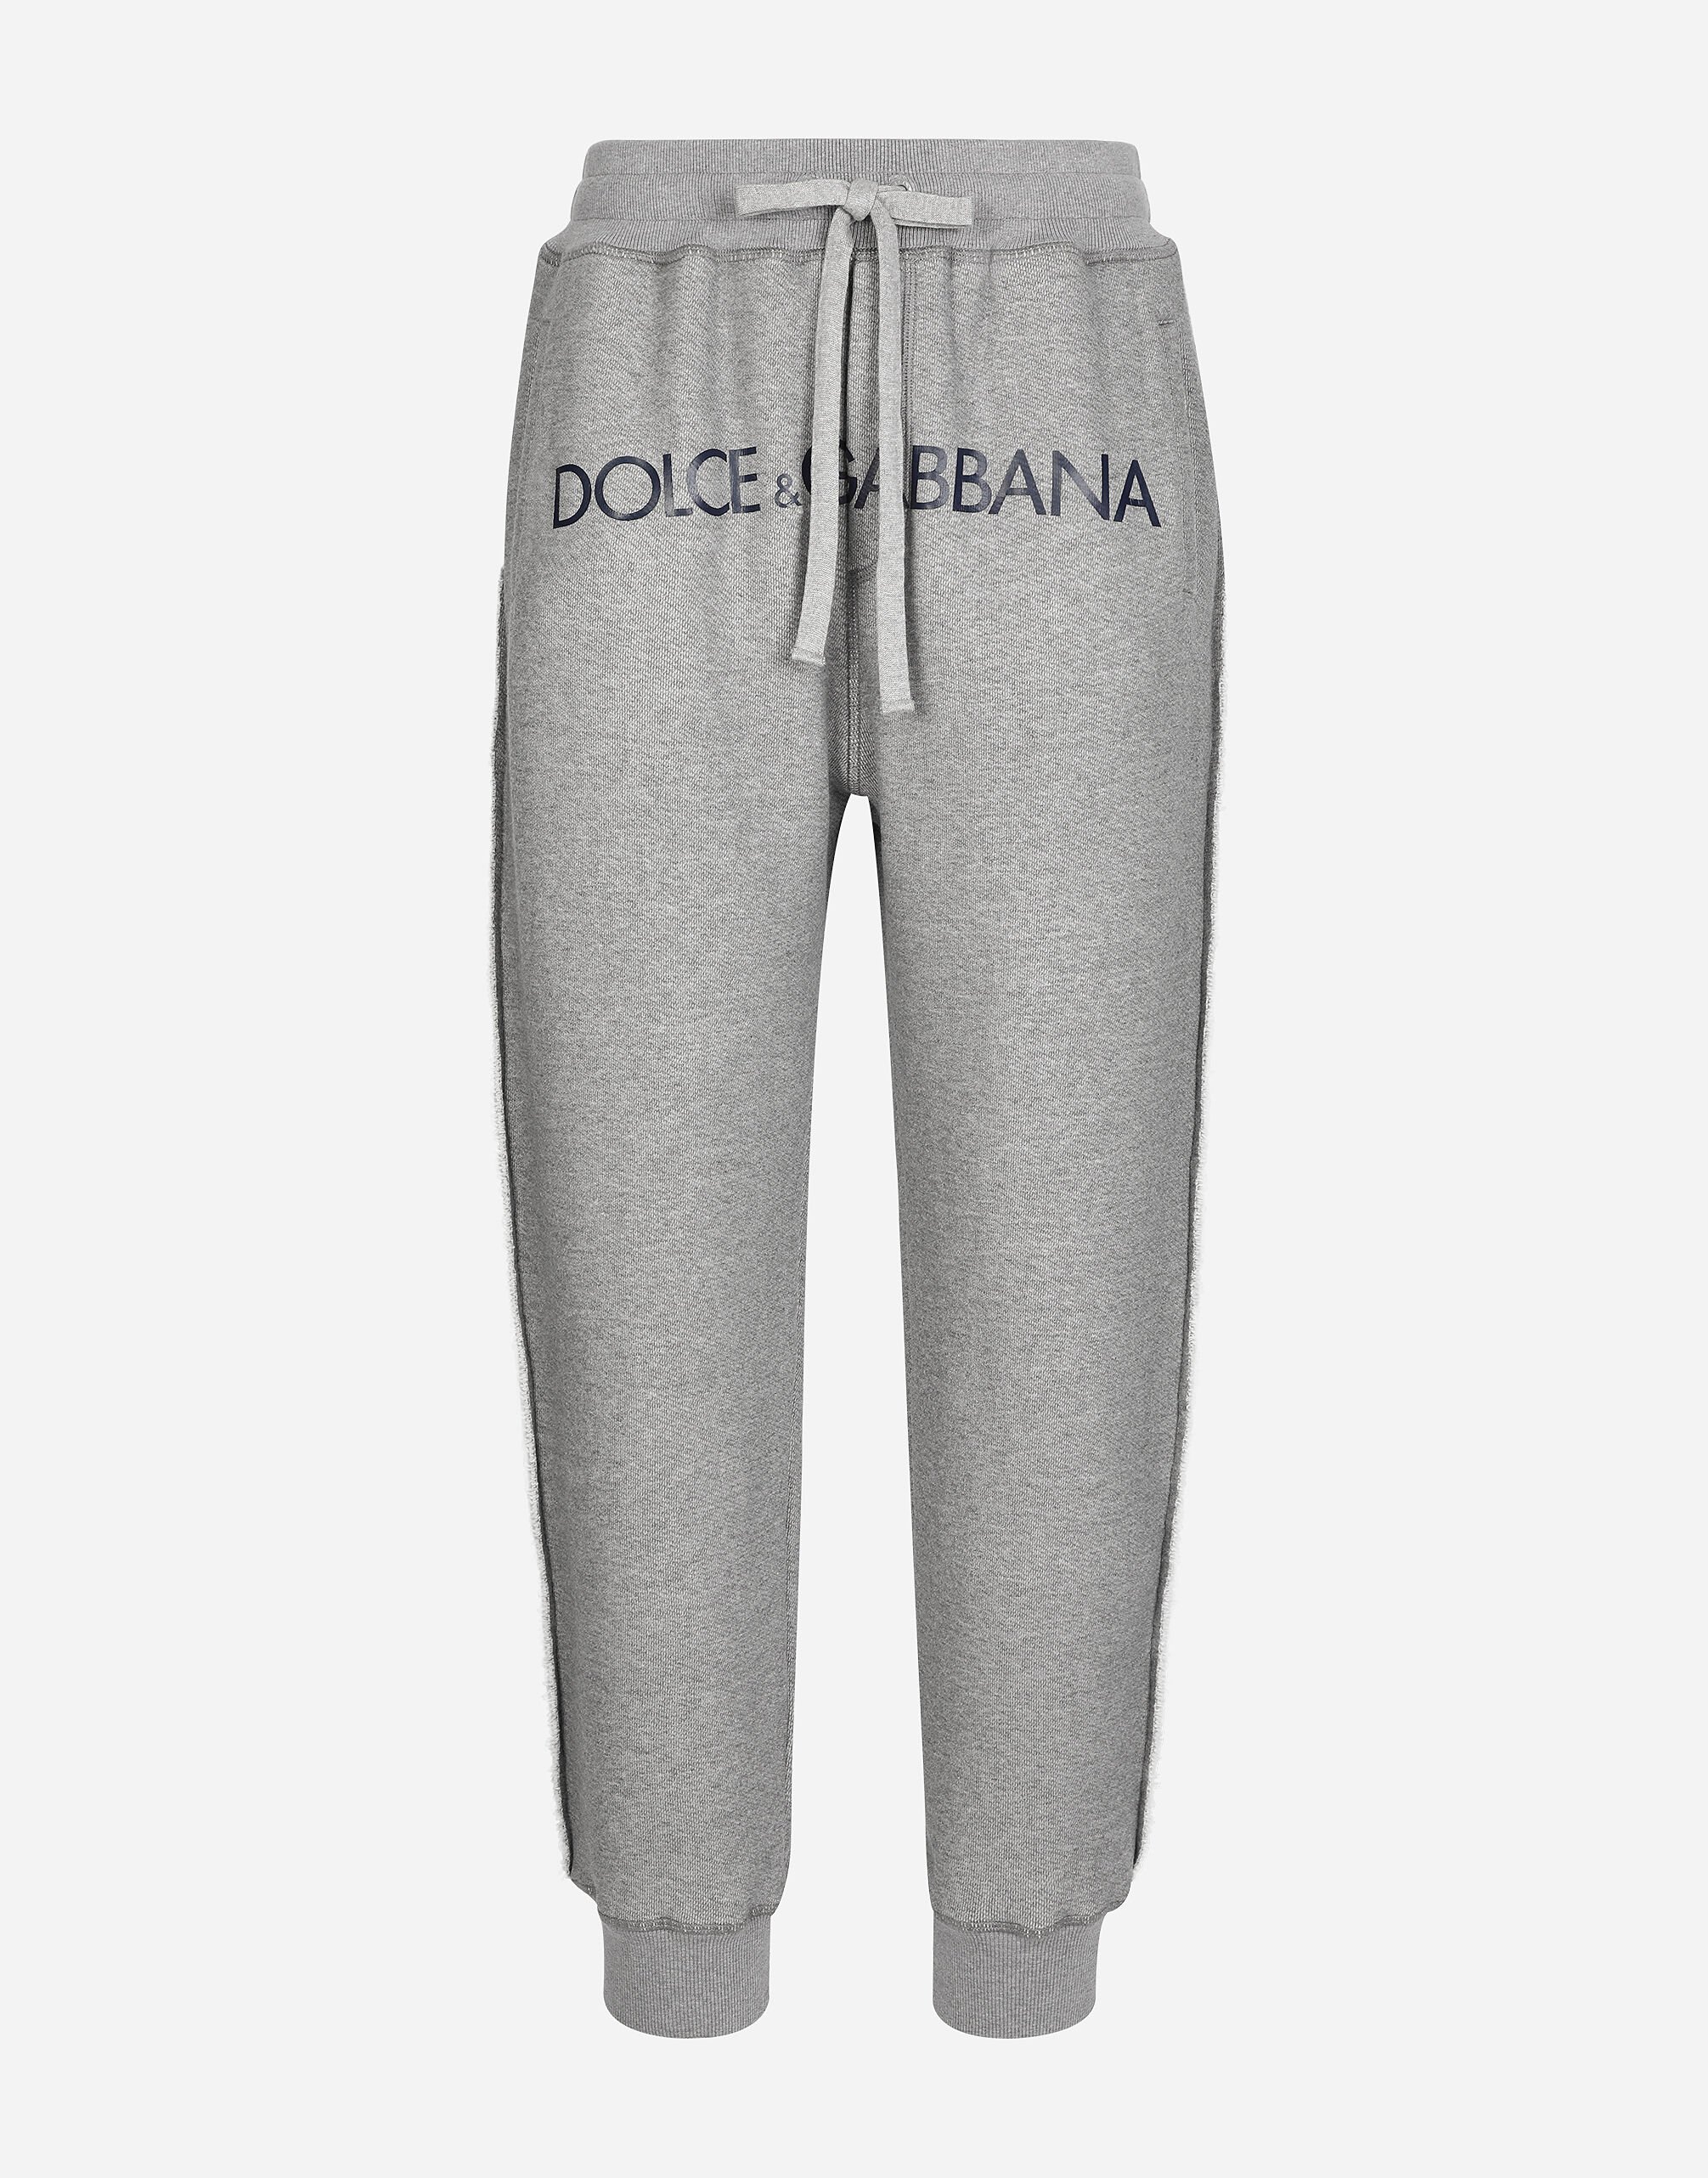 Dolce & Gabbana Jogging pants with Dolce&Gabbana logo Green G8RN8TG7K1T